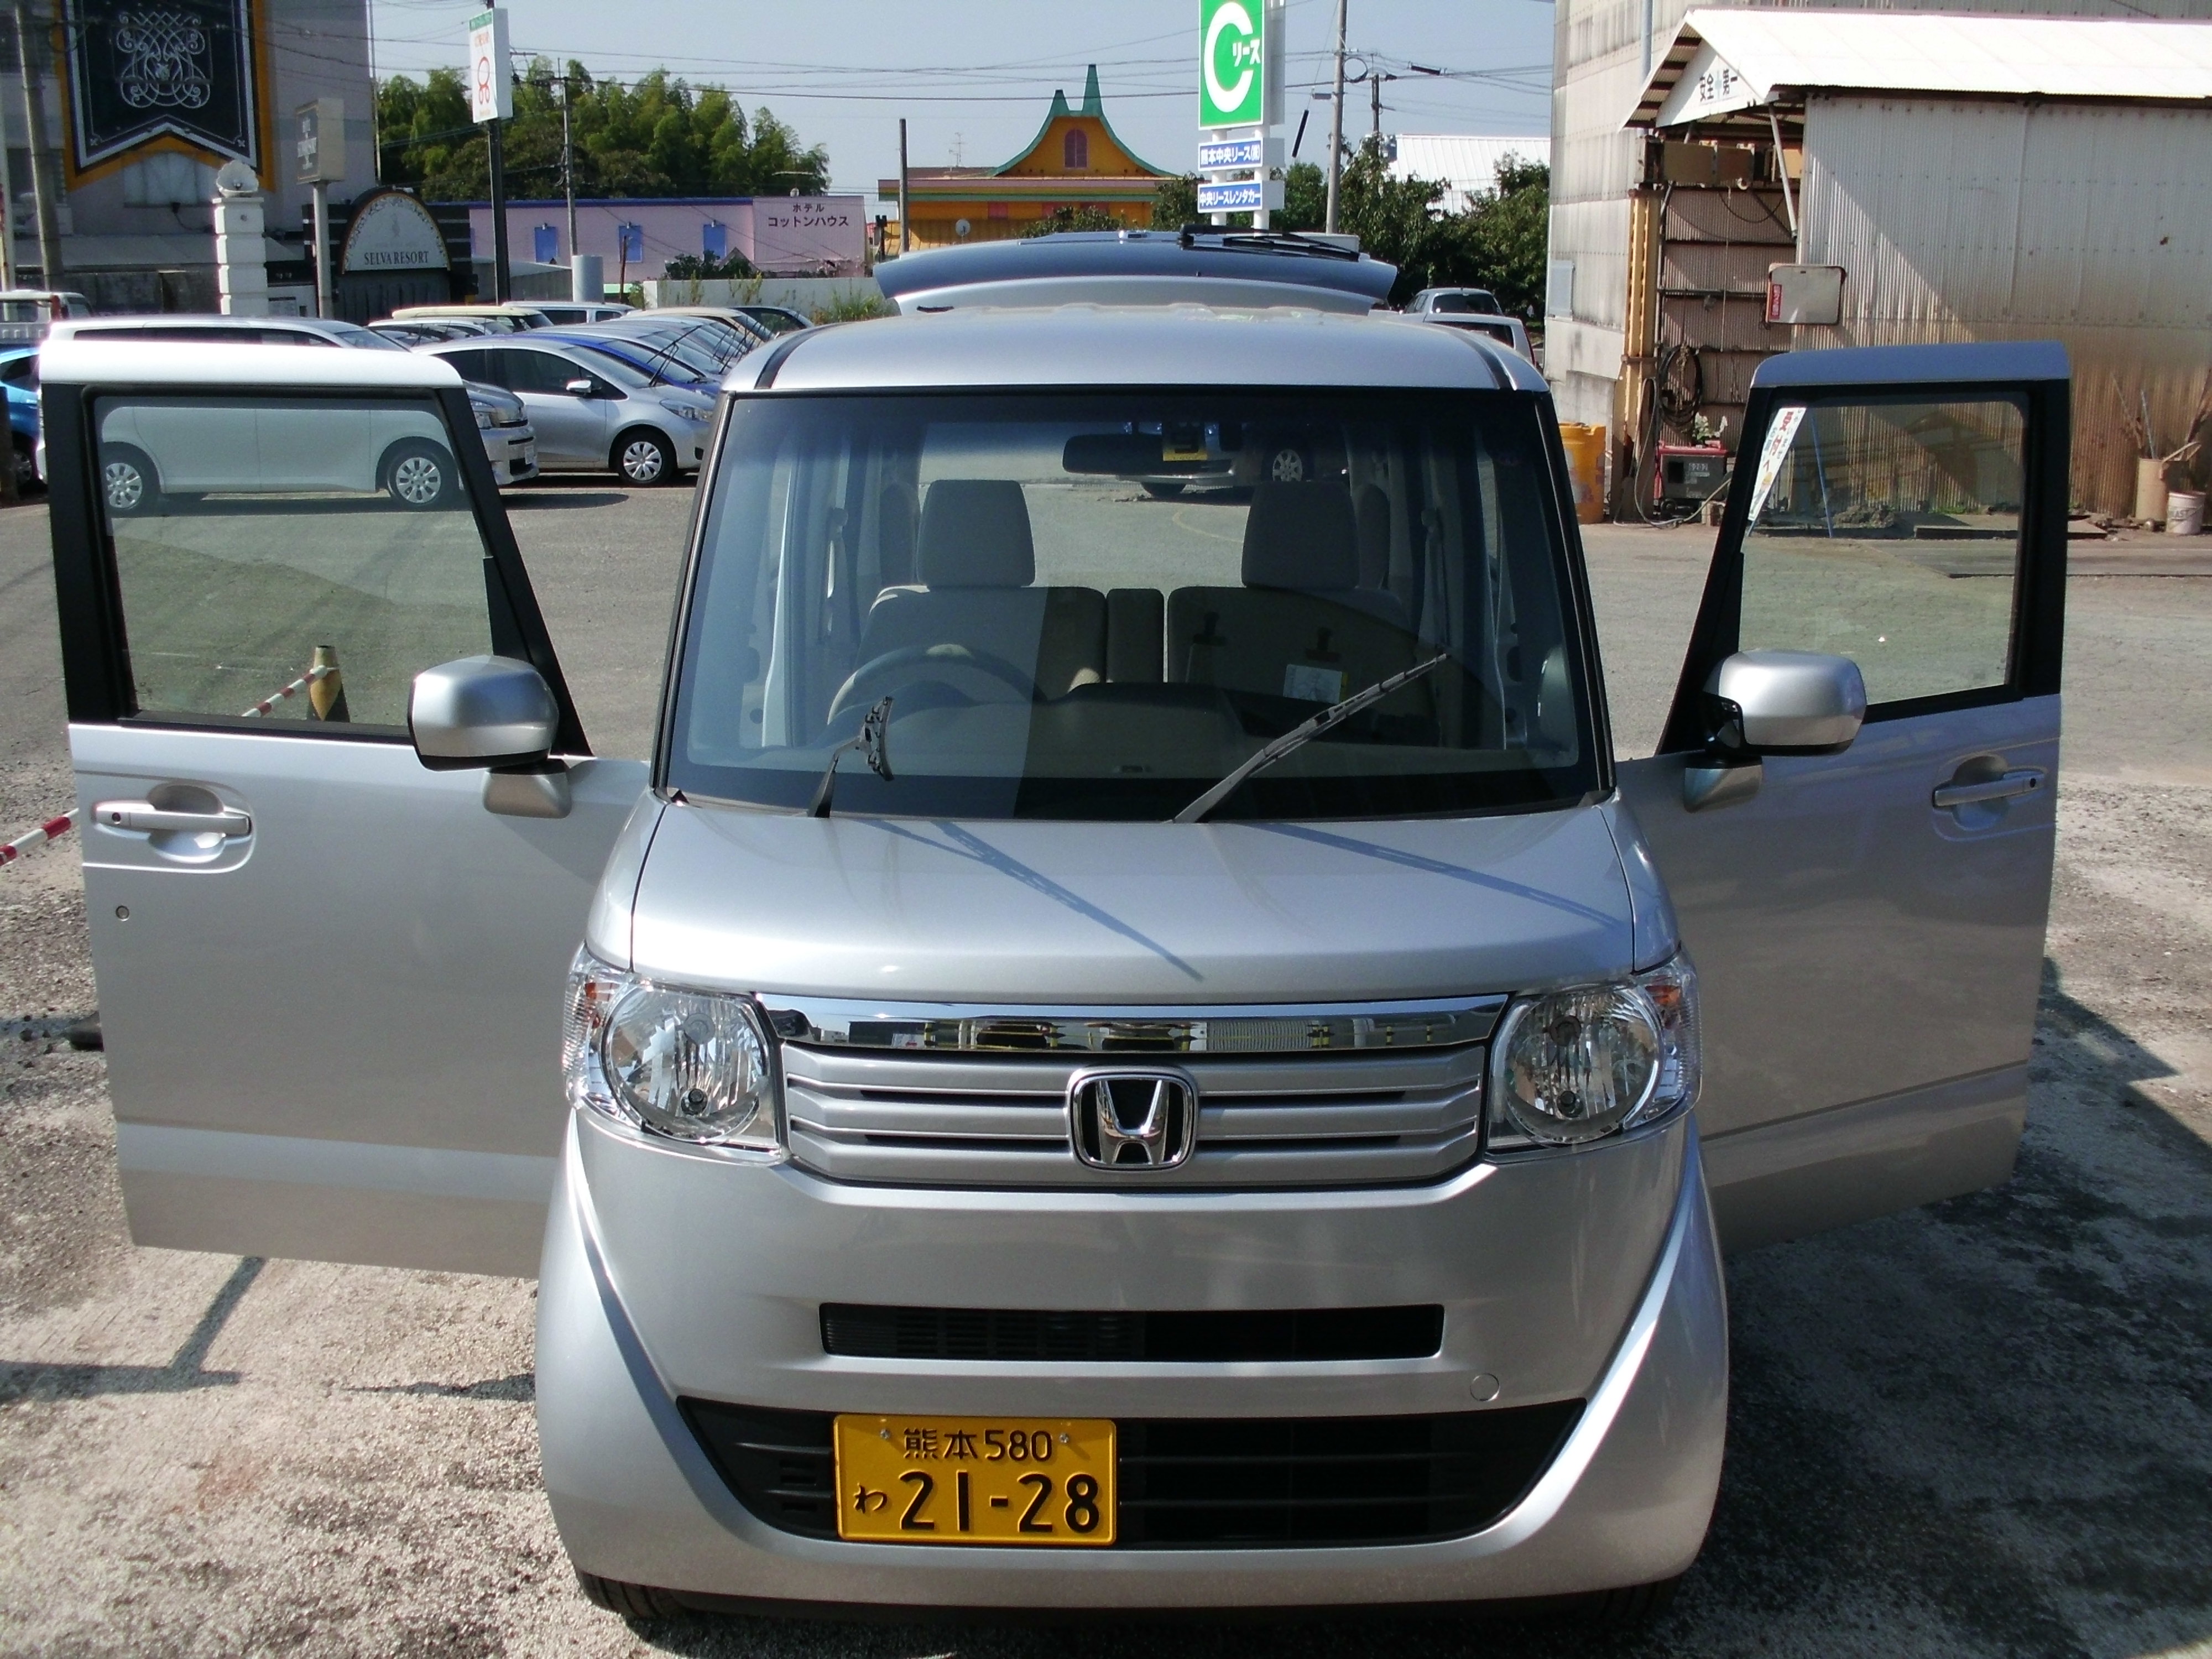 福祉仕様の新車 N Box が入庫しました 通常のn Boxとしても使用できます 熊本のレンタカーなら中央リースレンタカー コレカ